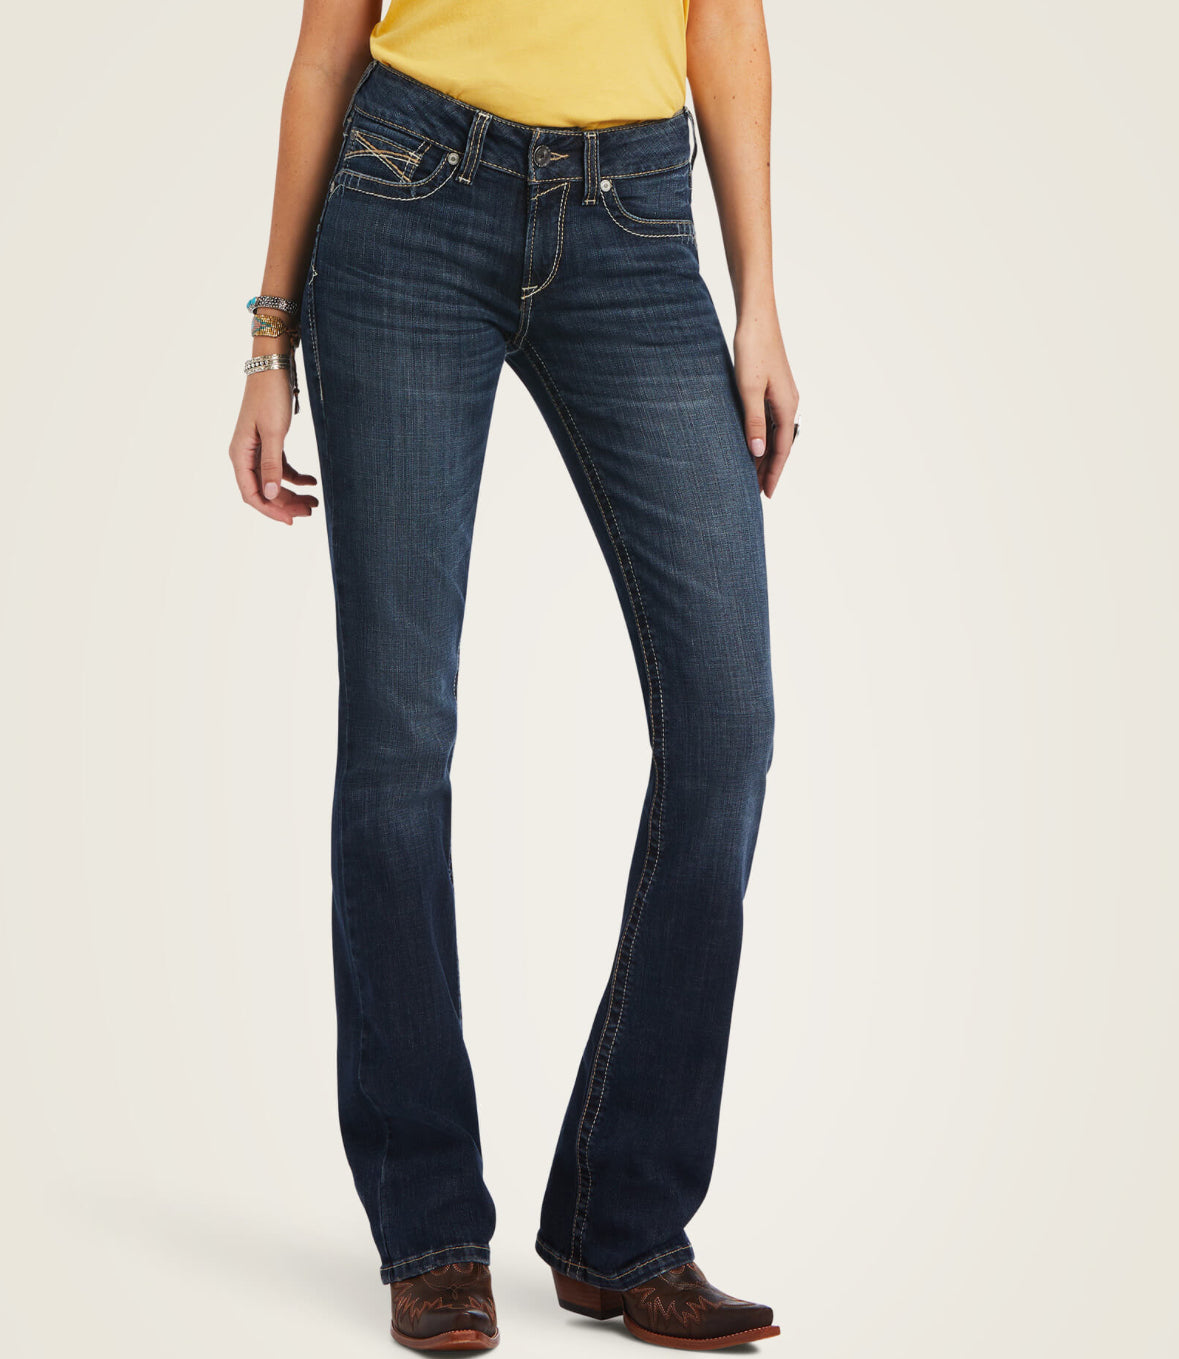 Women’s Ariat R.E.A.L. Perfect Rise Lexie Boot Cut Jean in Missouri